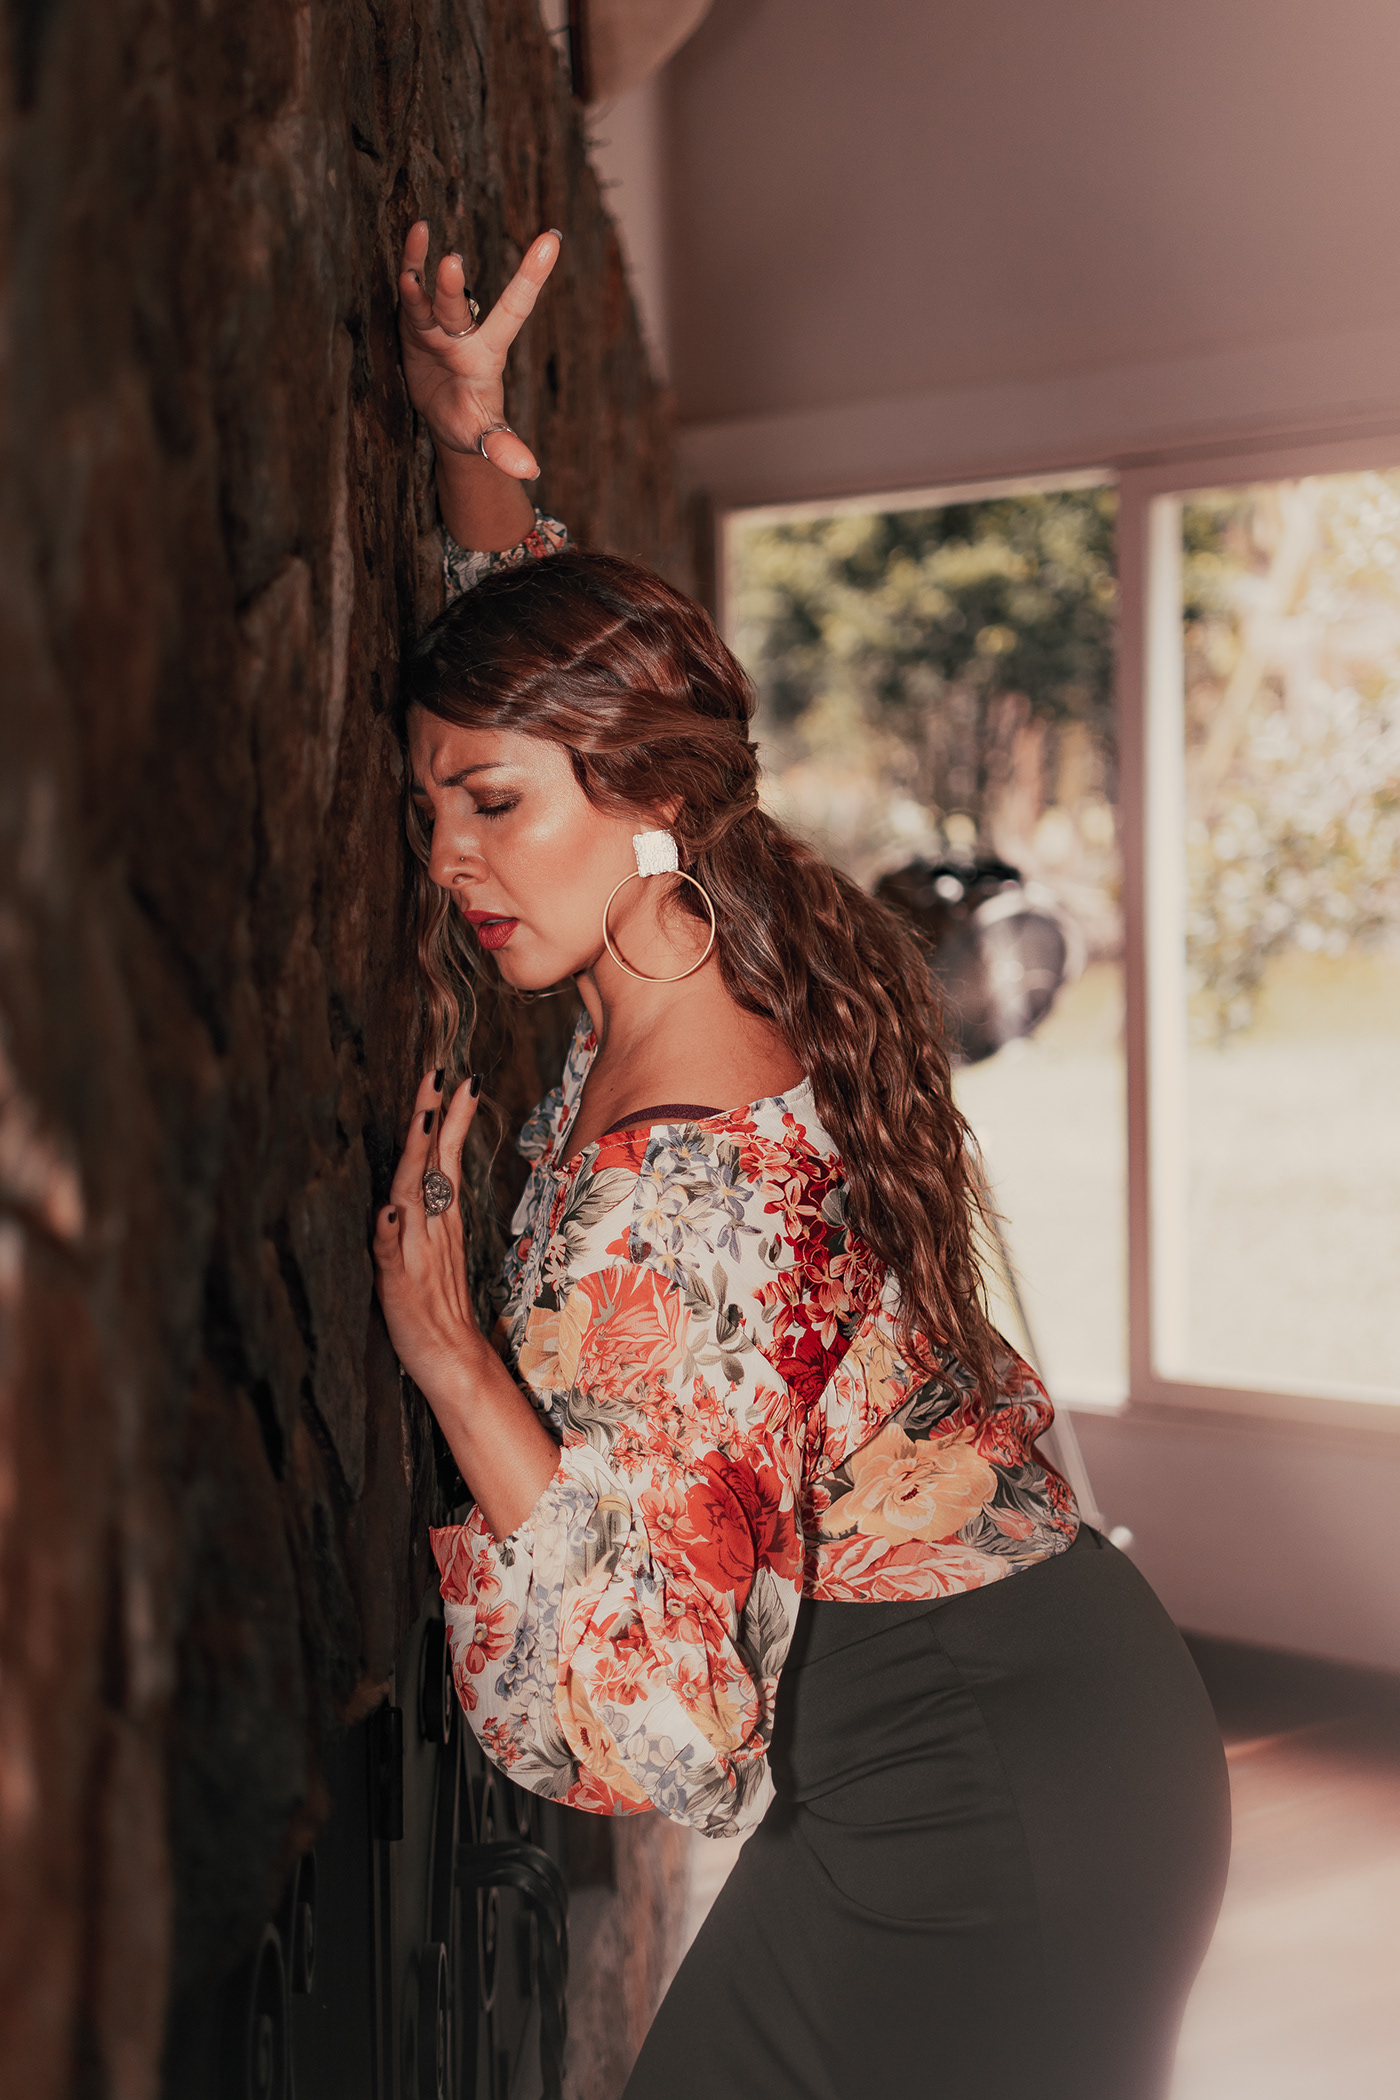 art artist bailaora españa Flamenco model photographer photoshoot portrait woman